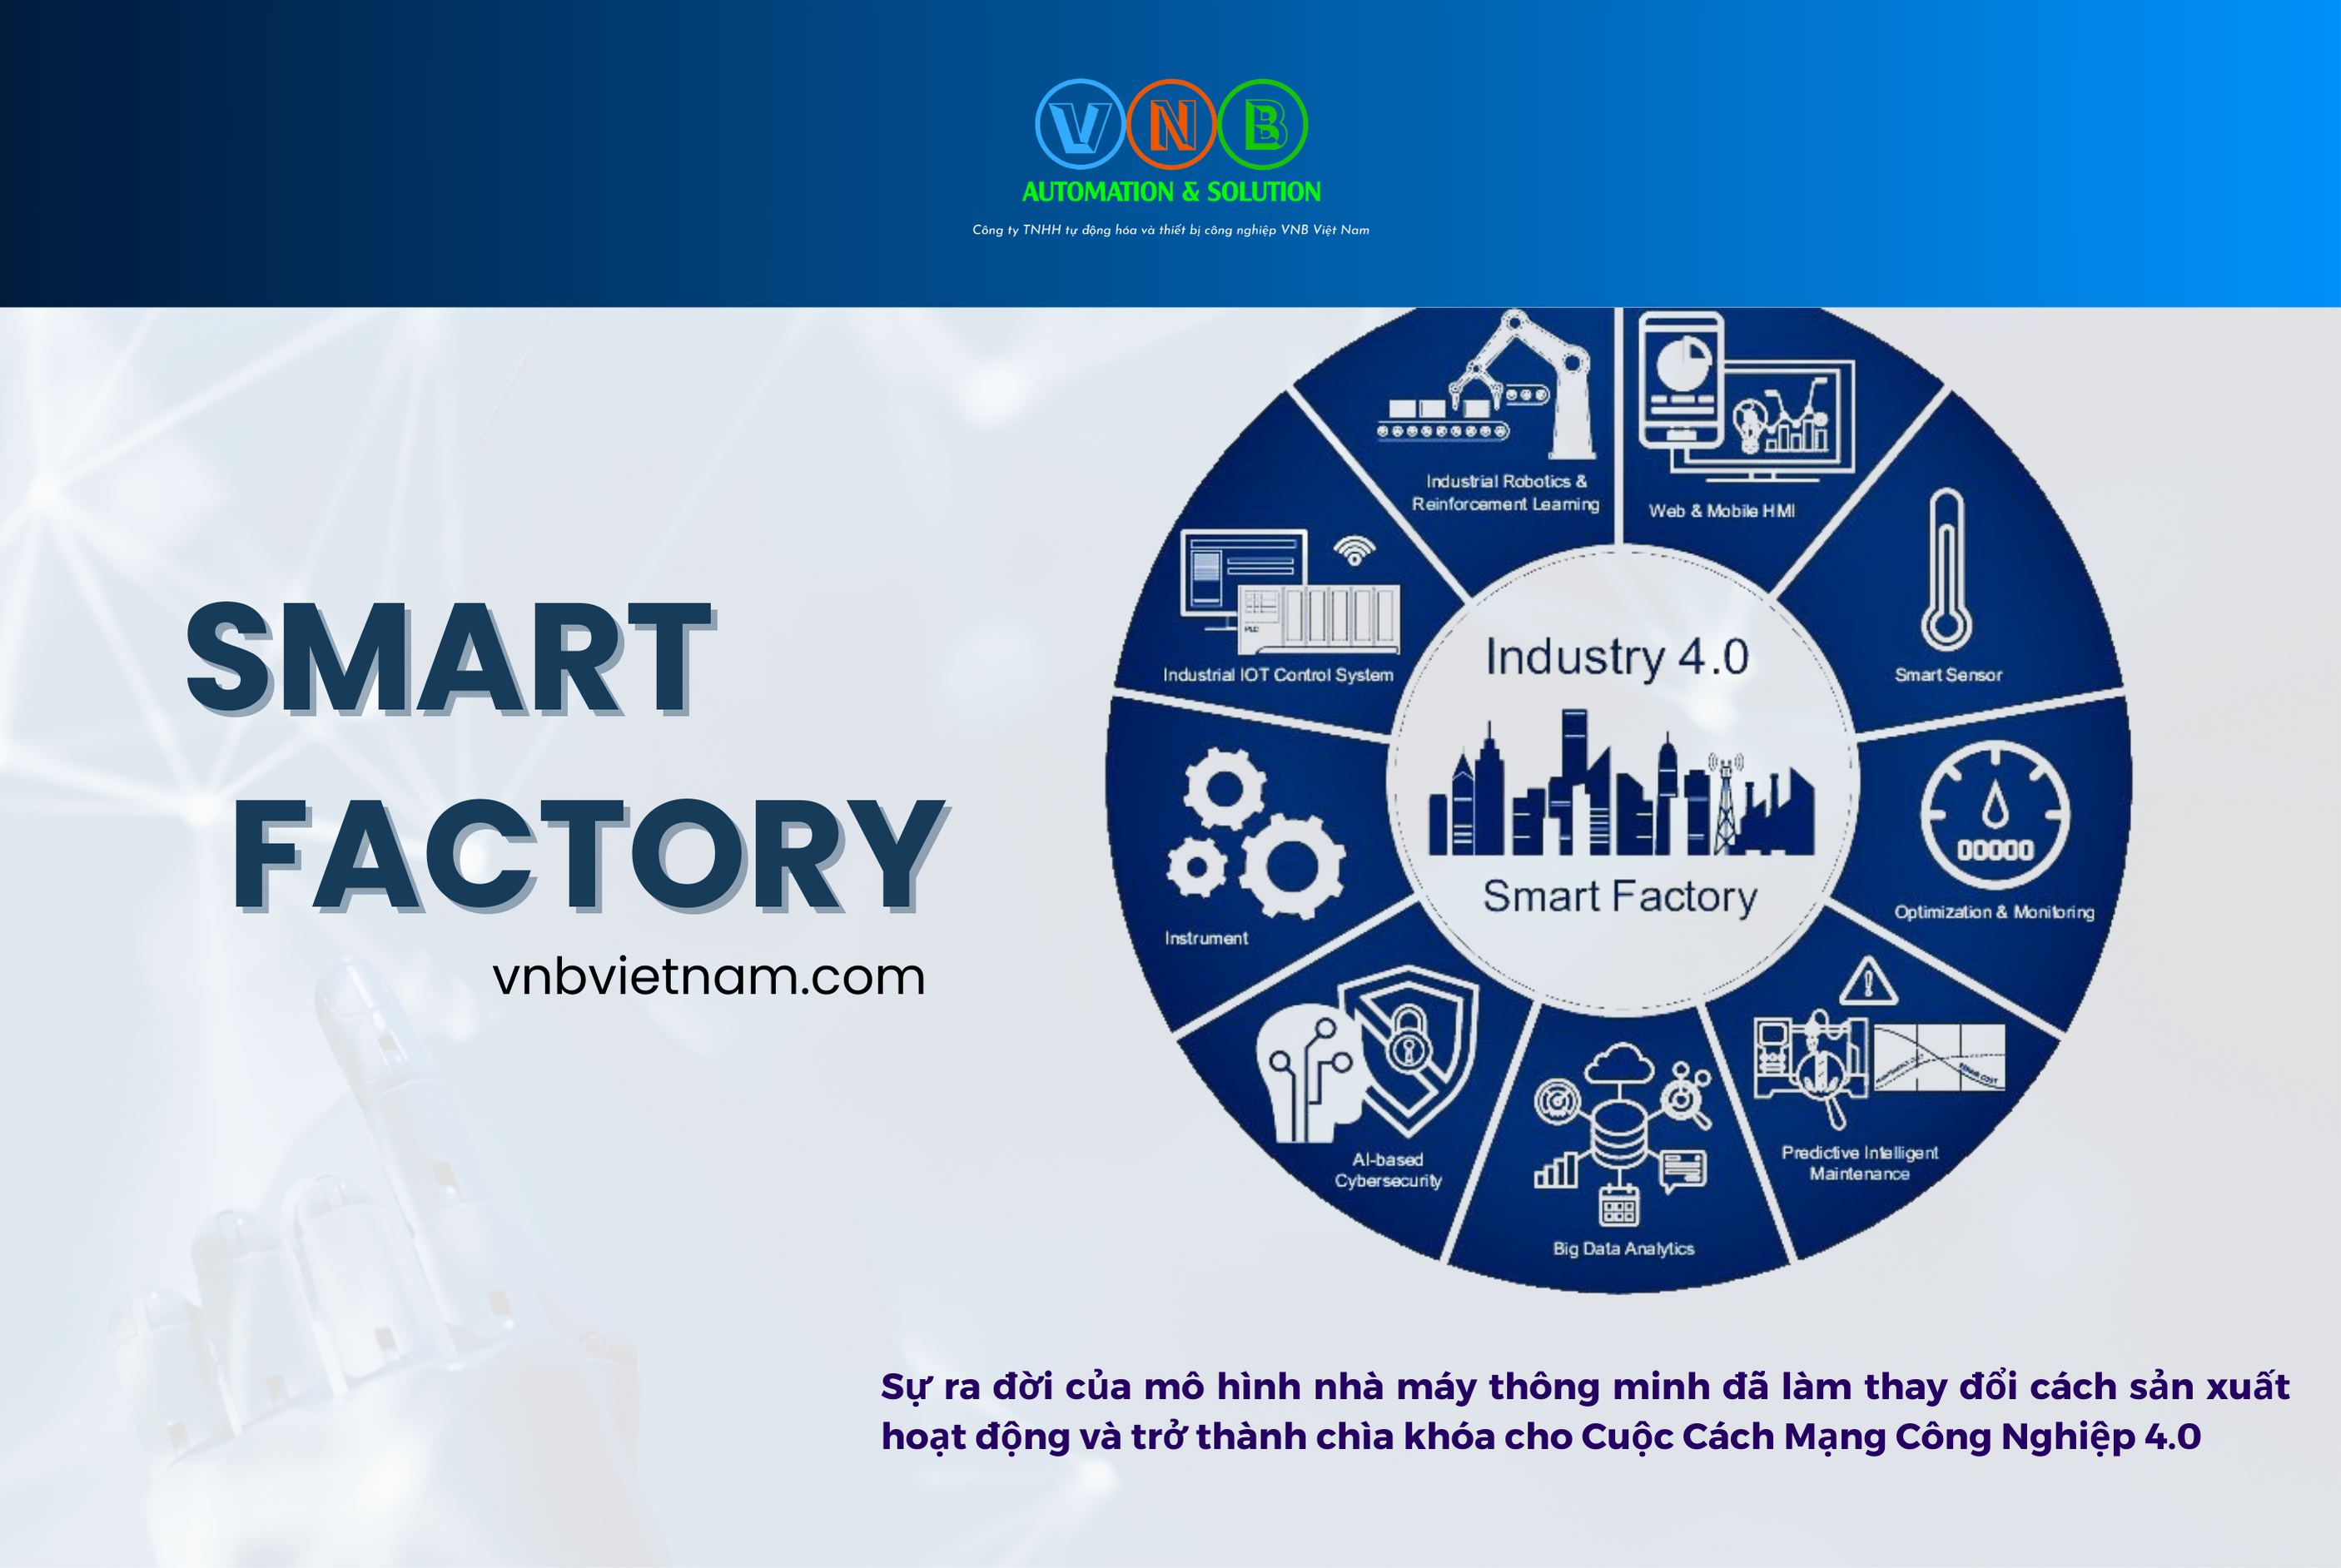 Smart Factory - Nhà máy thông minh Vnbvietnam